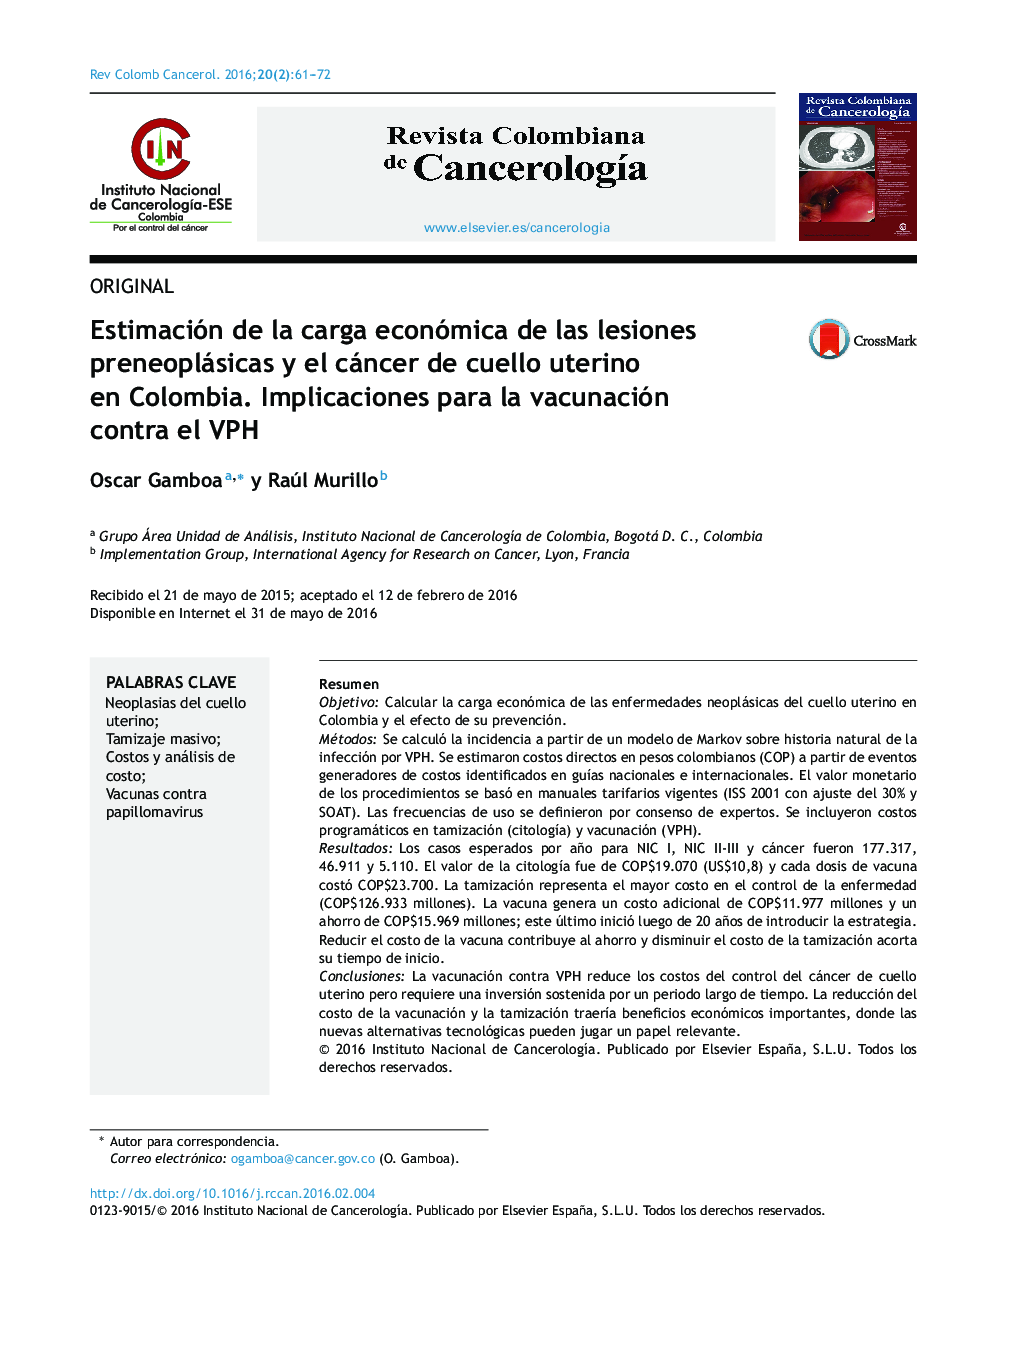 Estimación de la carga económica de las lesiones preneoplásicas y el cáncer de cuello uterino en Colombia. Implicaciones para la vacunación contra el VPH